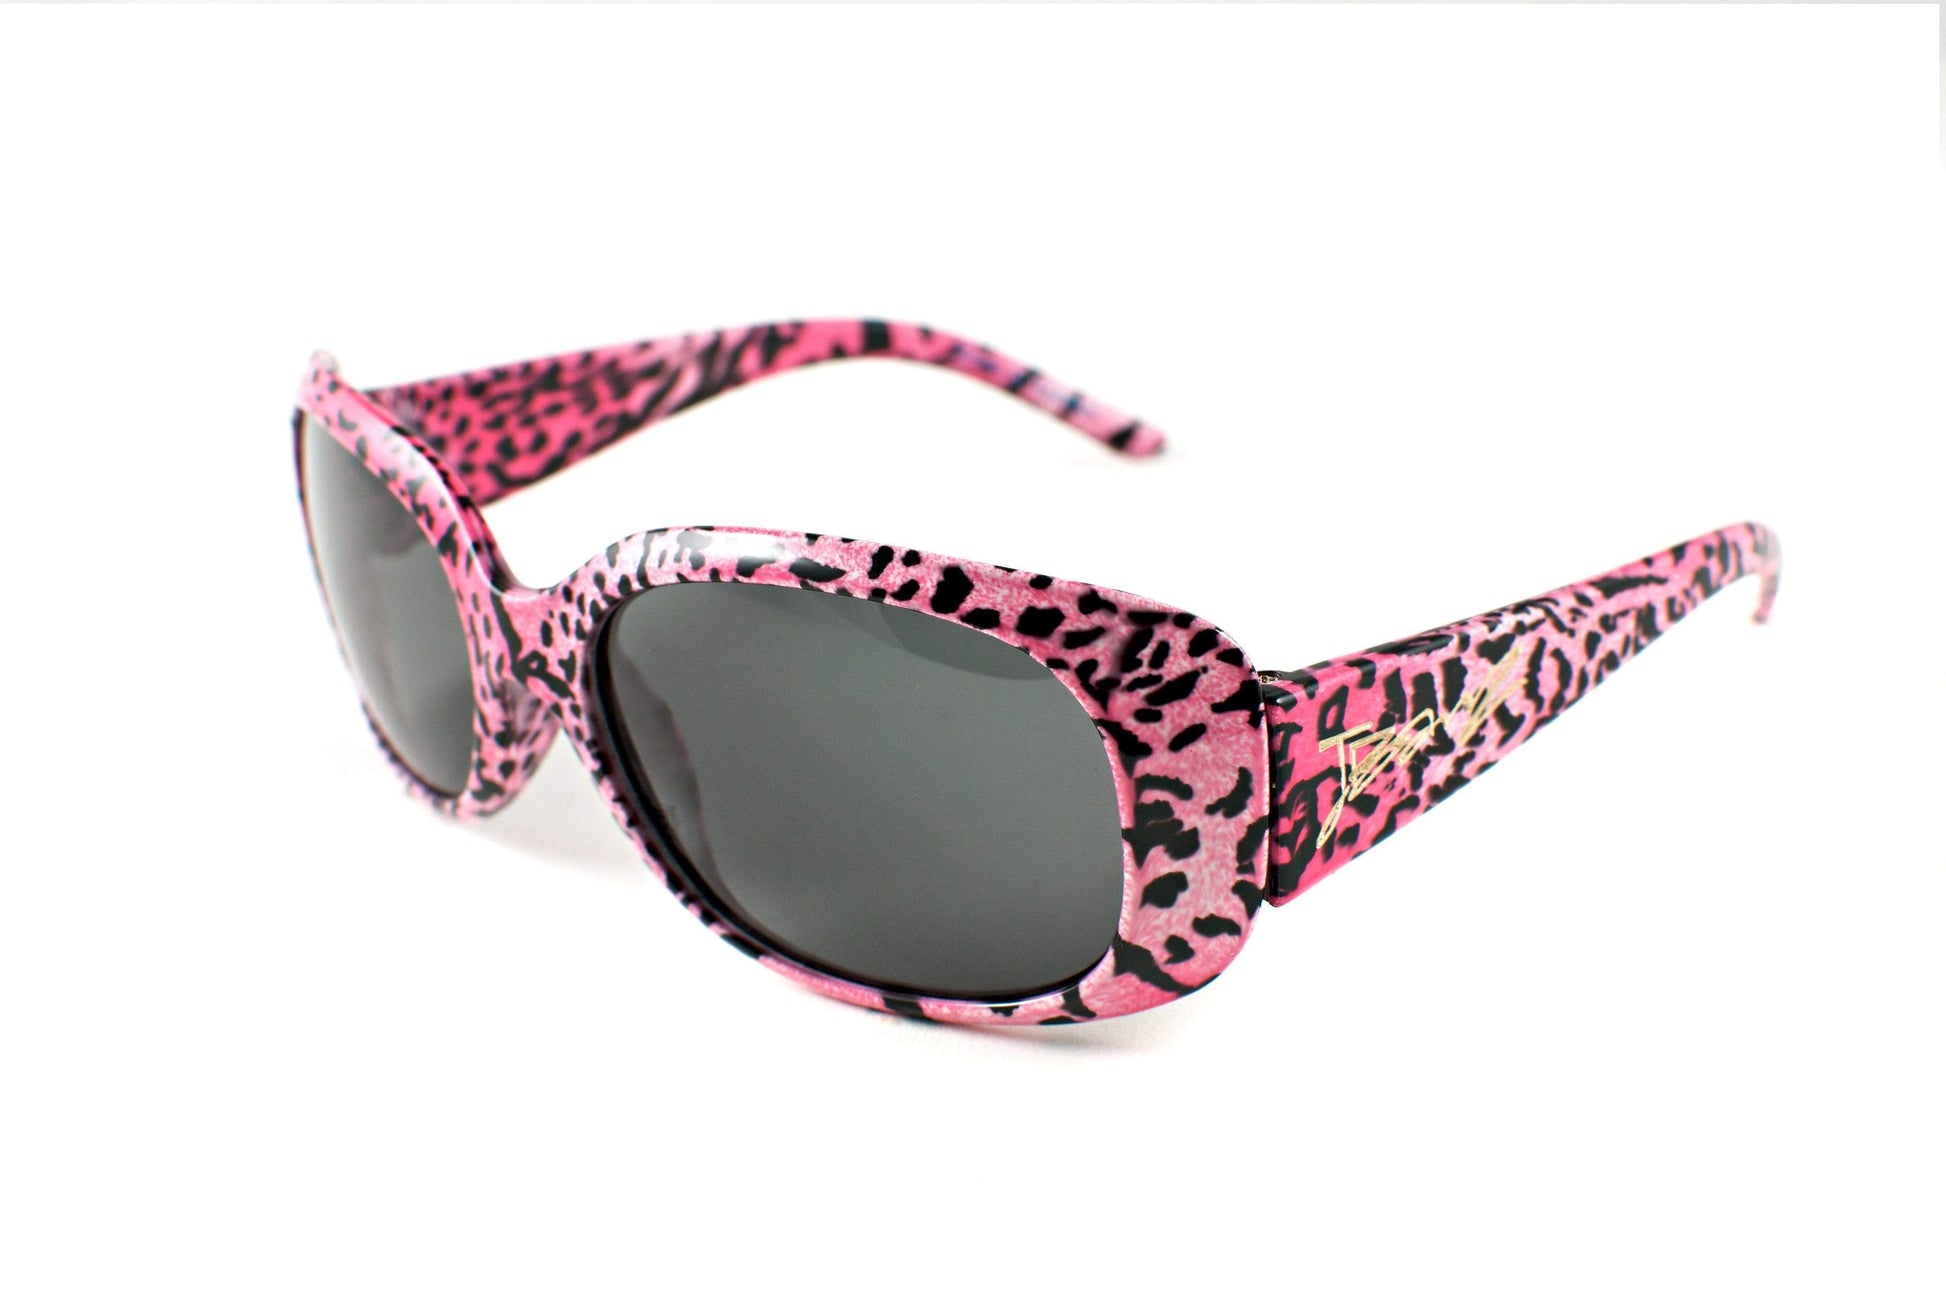 BANZ Sunglasses Girls Sunglasses - Patterns Safari Pink